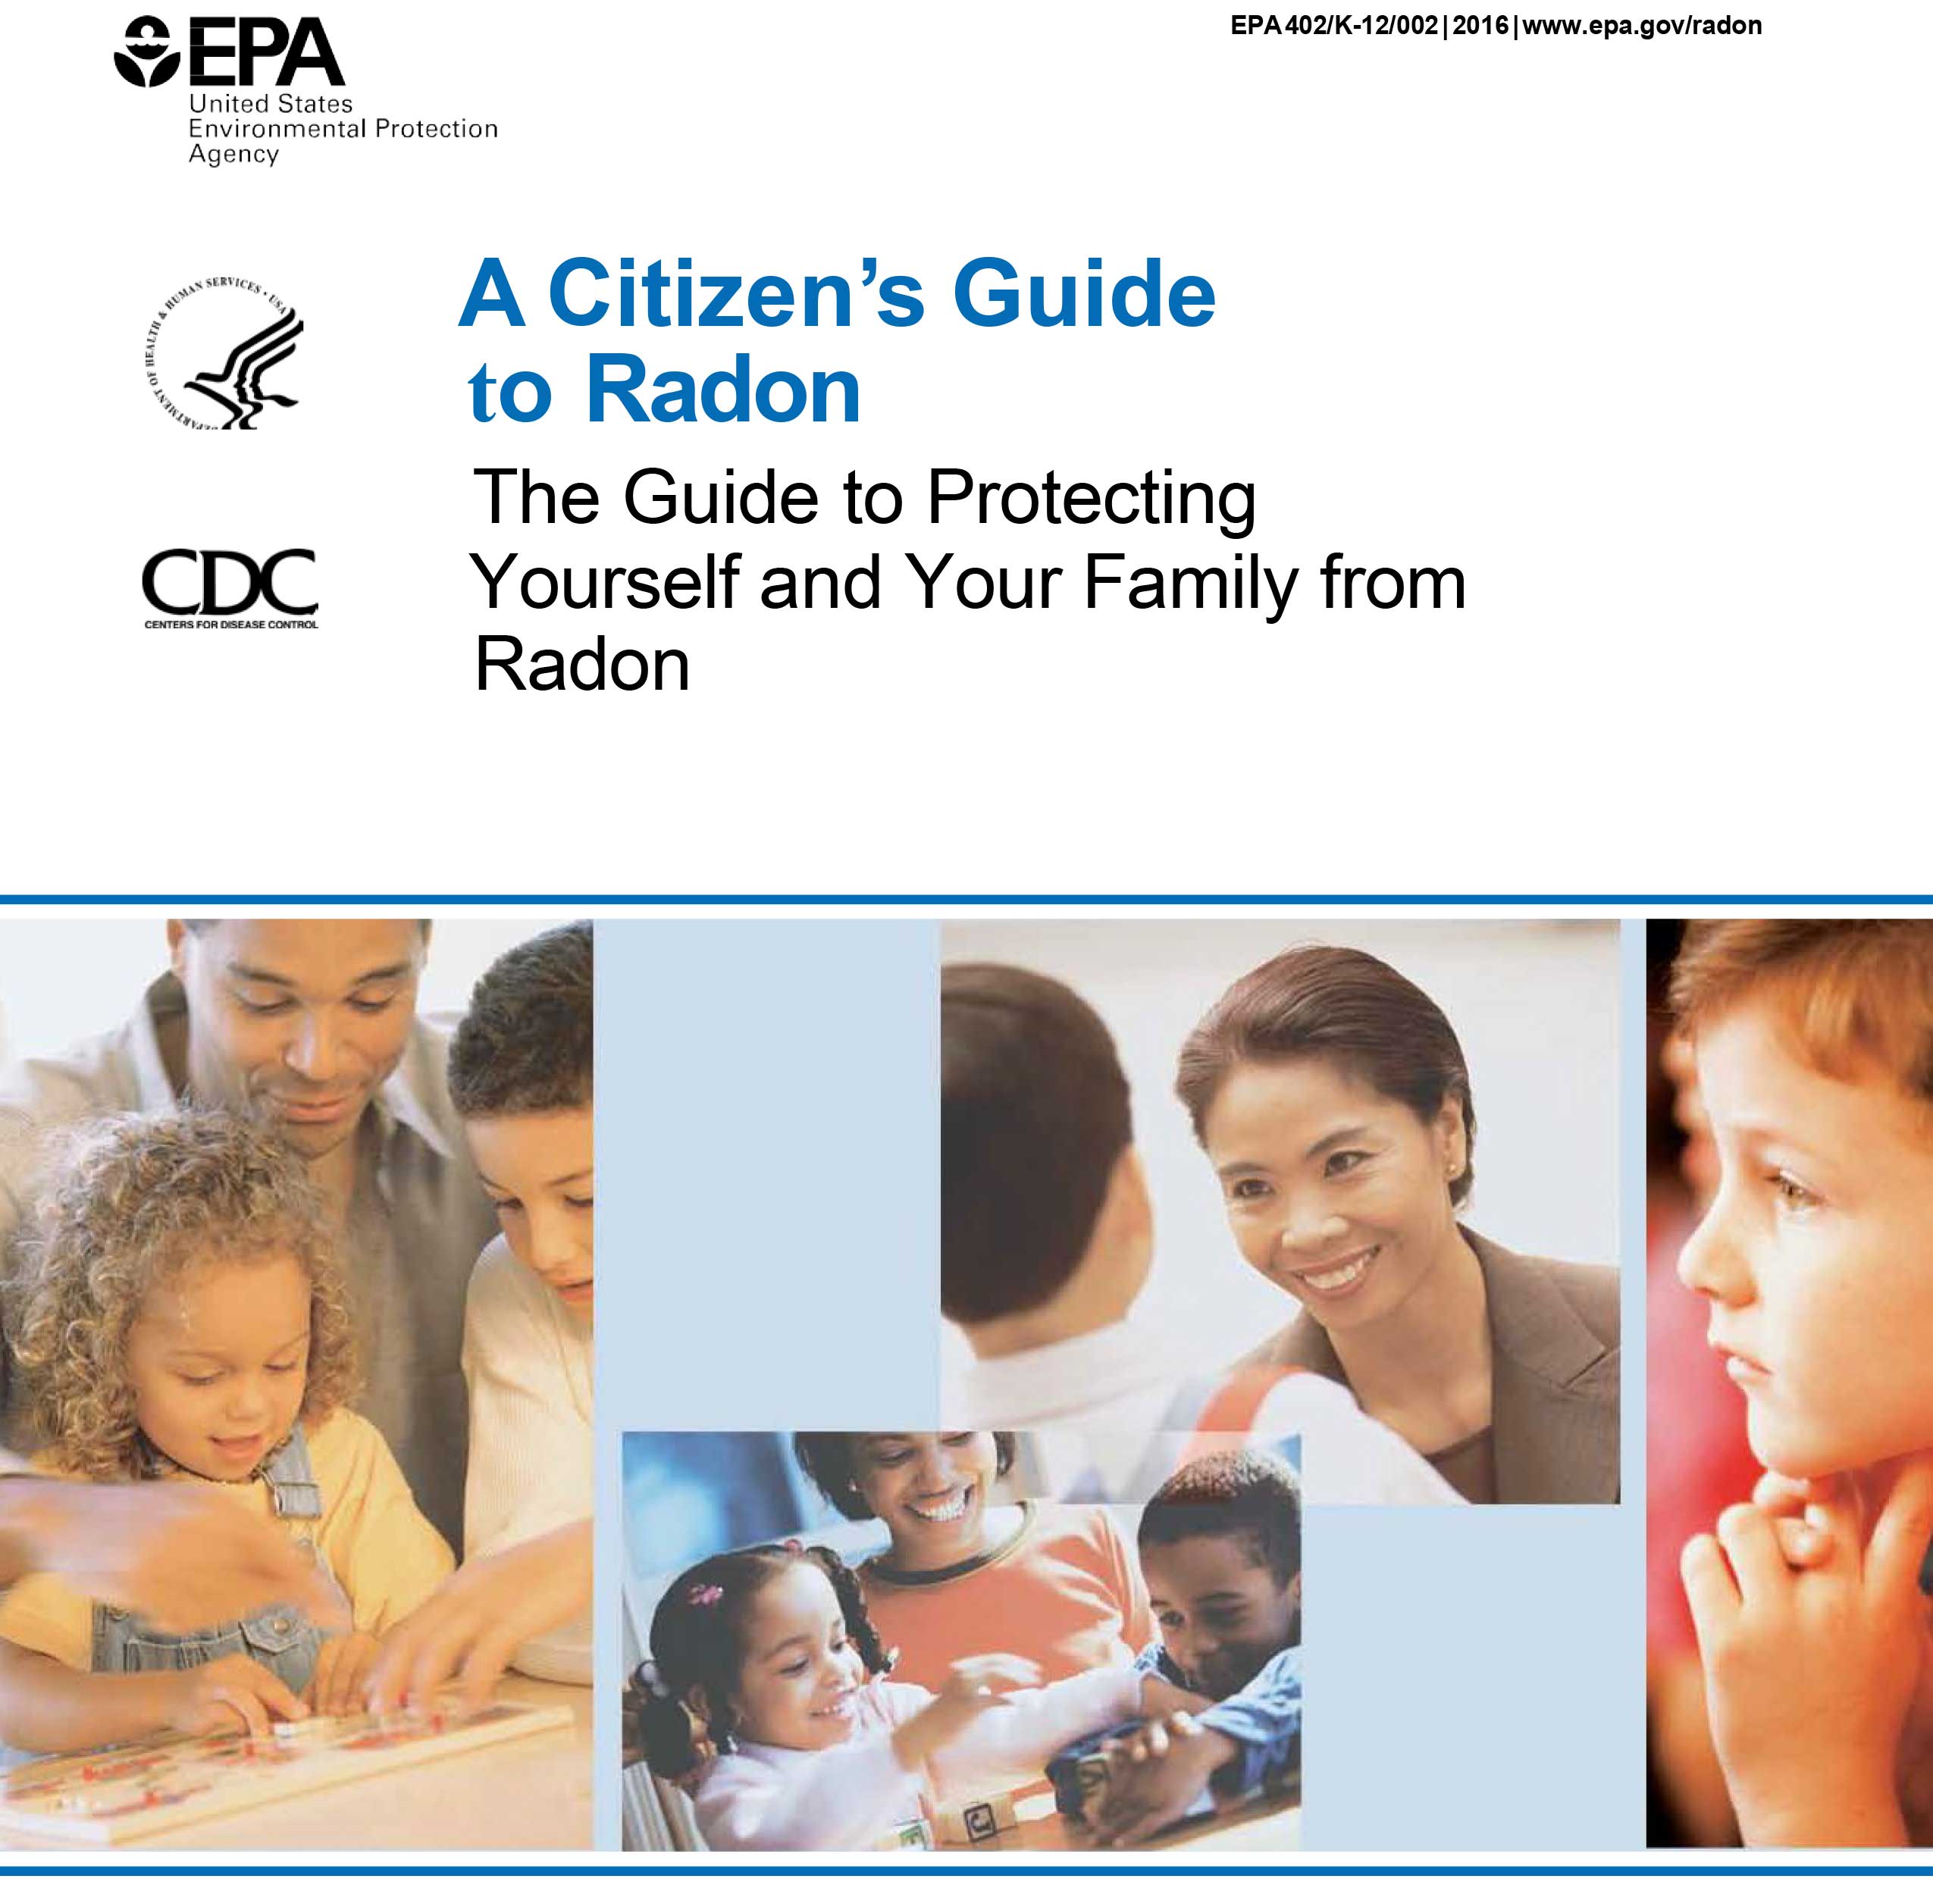 A citizen's guide to Radon